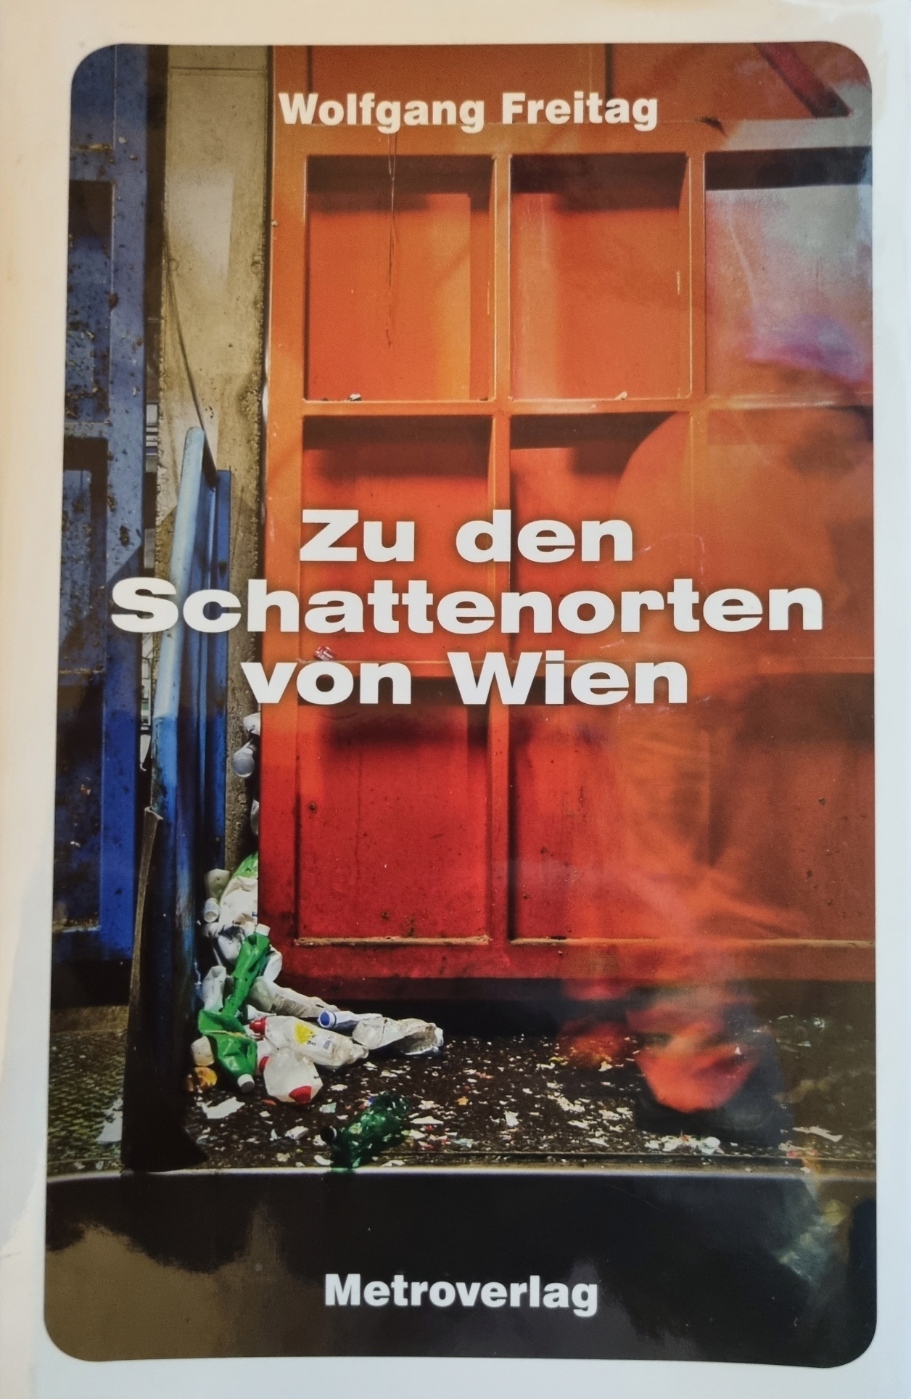 Freitag, Zu den Schattenorten von Wien, Cover.jpg